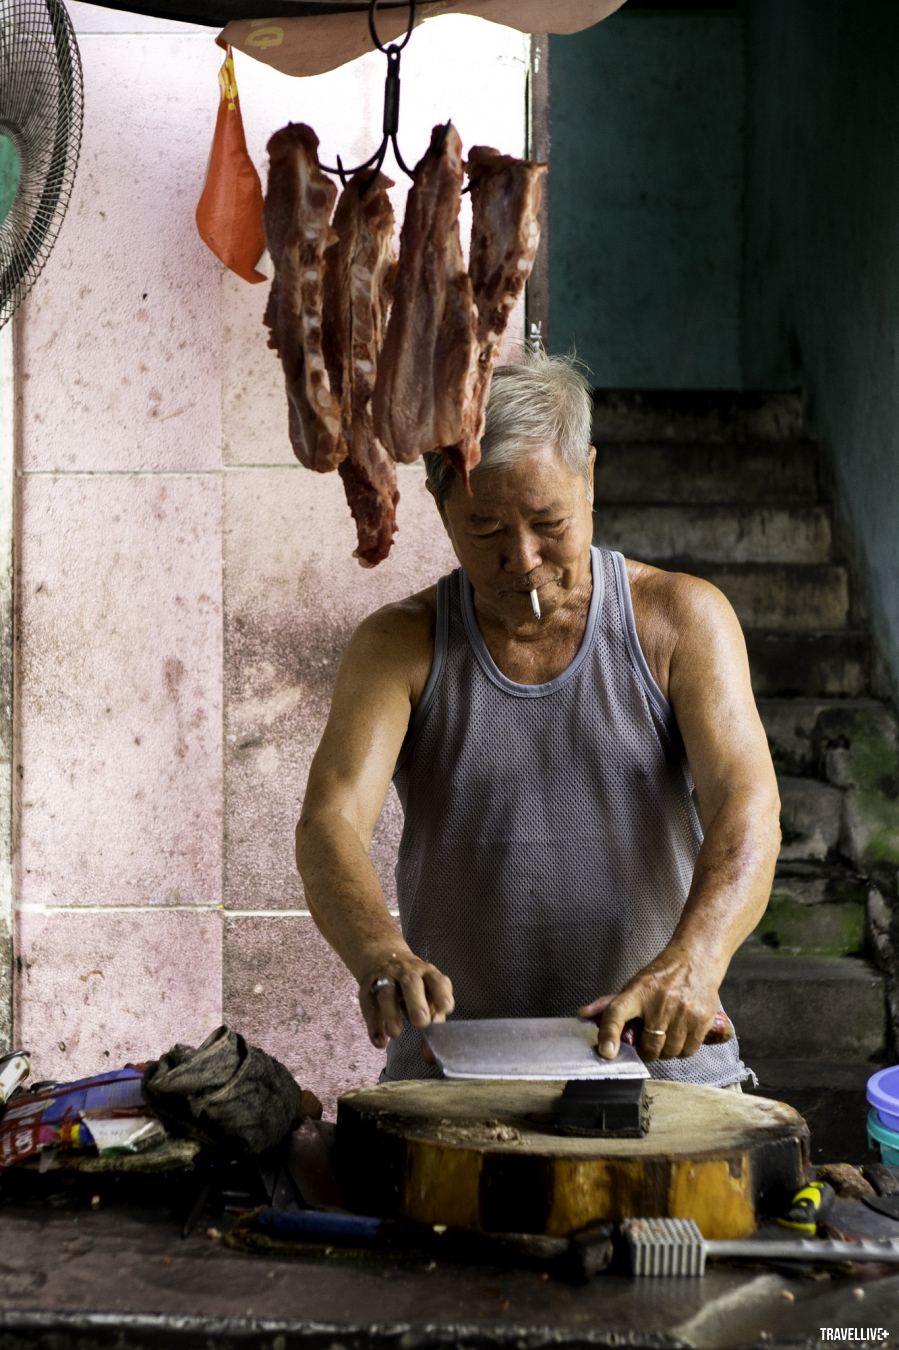 Chú bán thịt heo ở Chợ Lớn, nay đã gần 80 tuổi nhưng vẫn vui vẻ làm việc